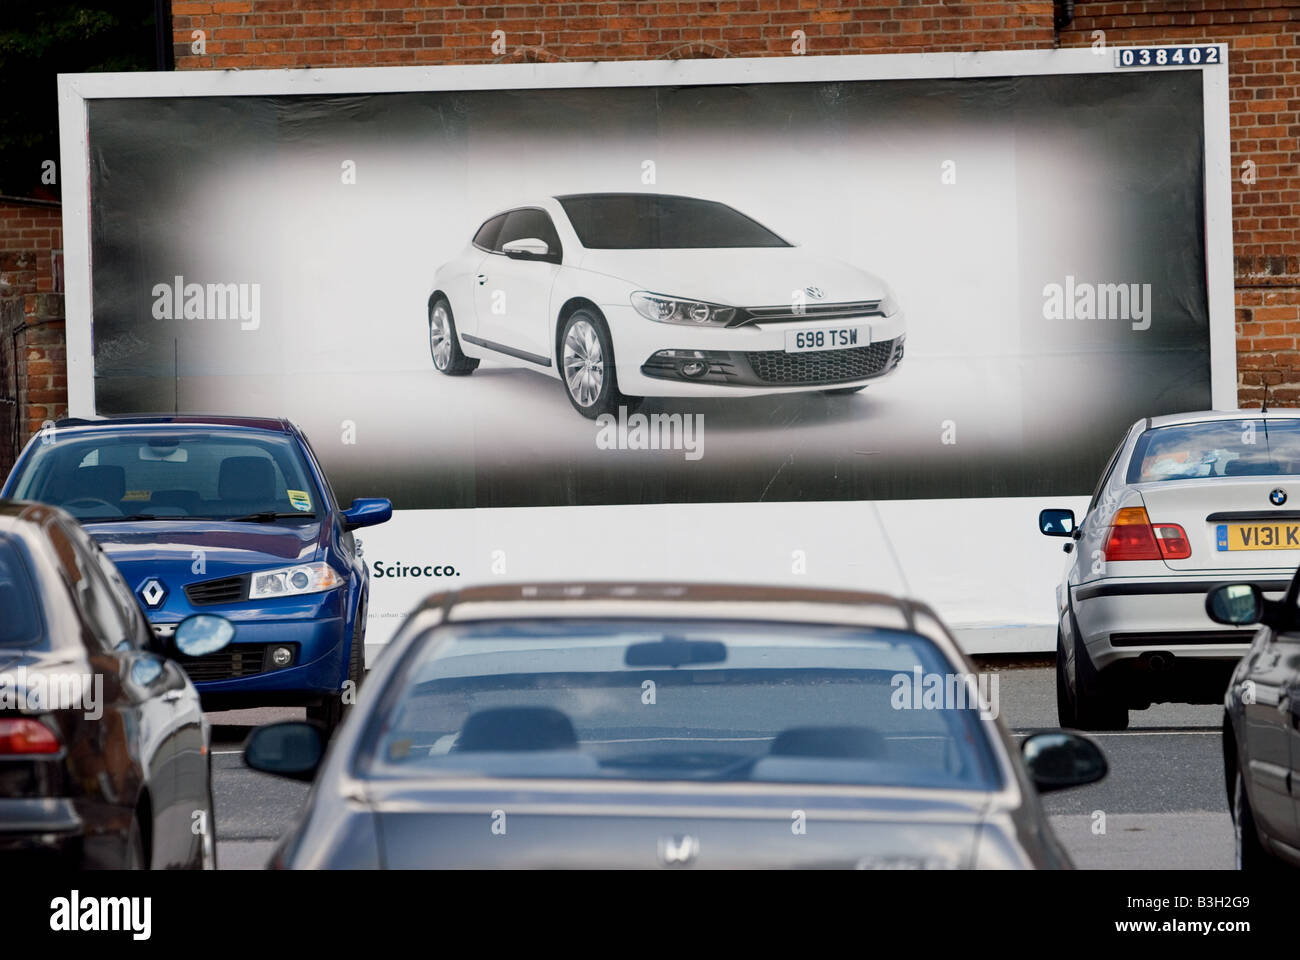 Der neue VW Scirocco Auto in einem Parkhaus, Ipswich, Suffolk, UK Plakatwerbung. Stockfoto